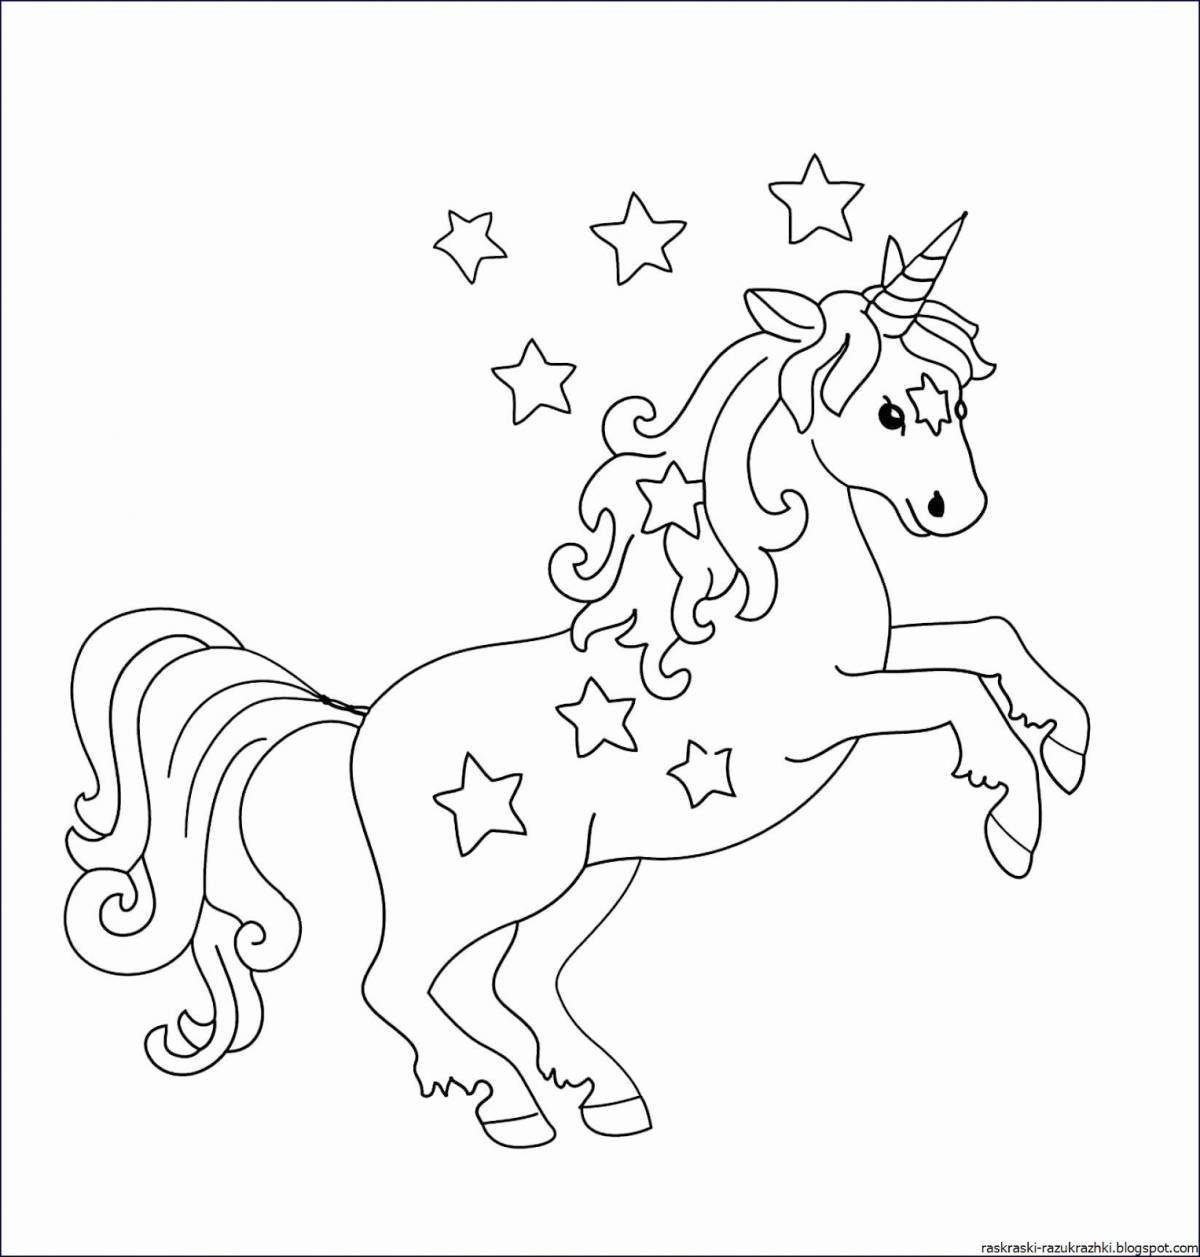 Shiny coloring unicorn image